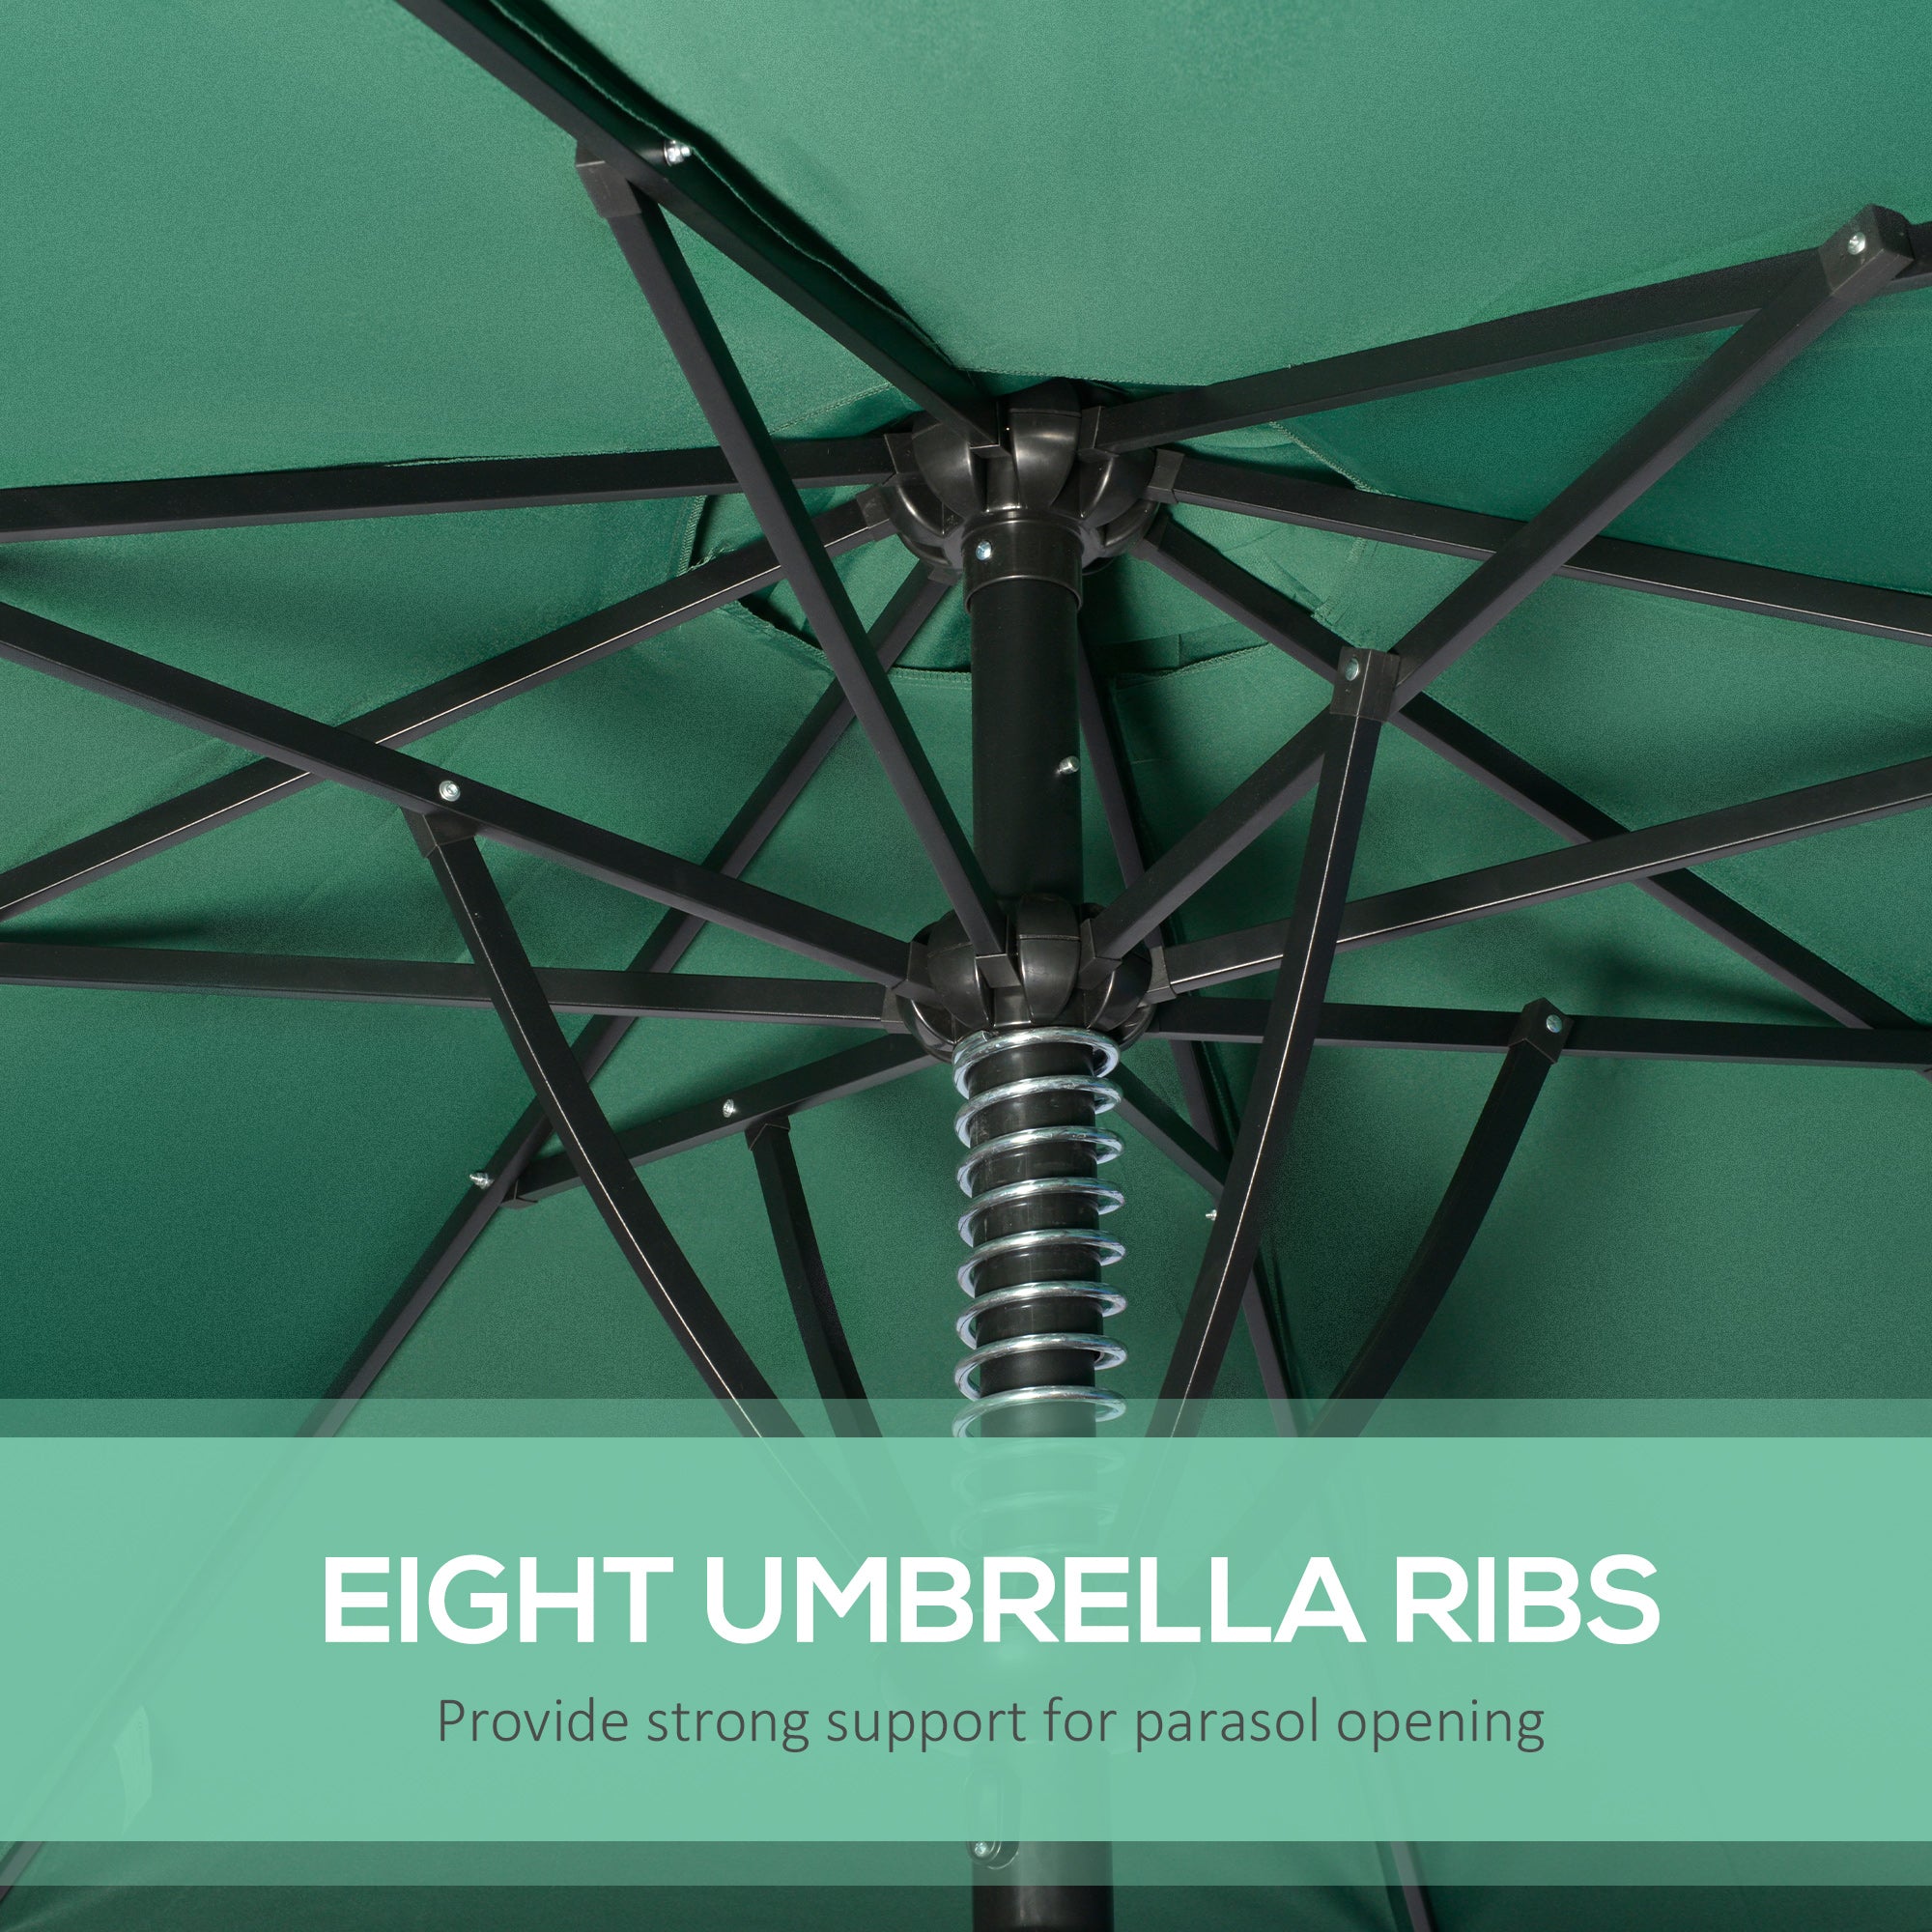 Outsunny Garden Parasol Umbrella, Outdoor Market Table Umbrella Sun Shade Canopy with 8 Ribs, Green